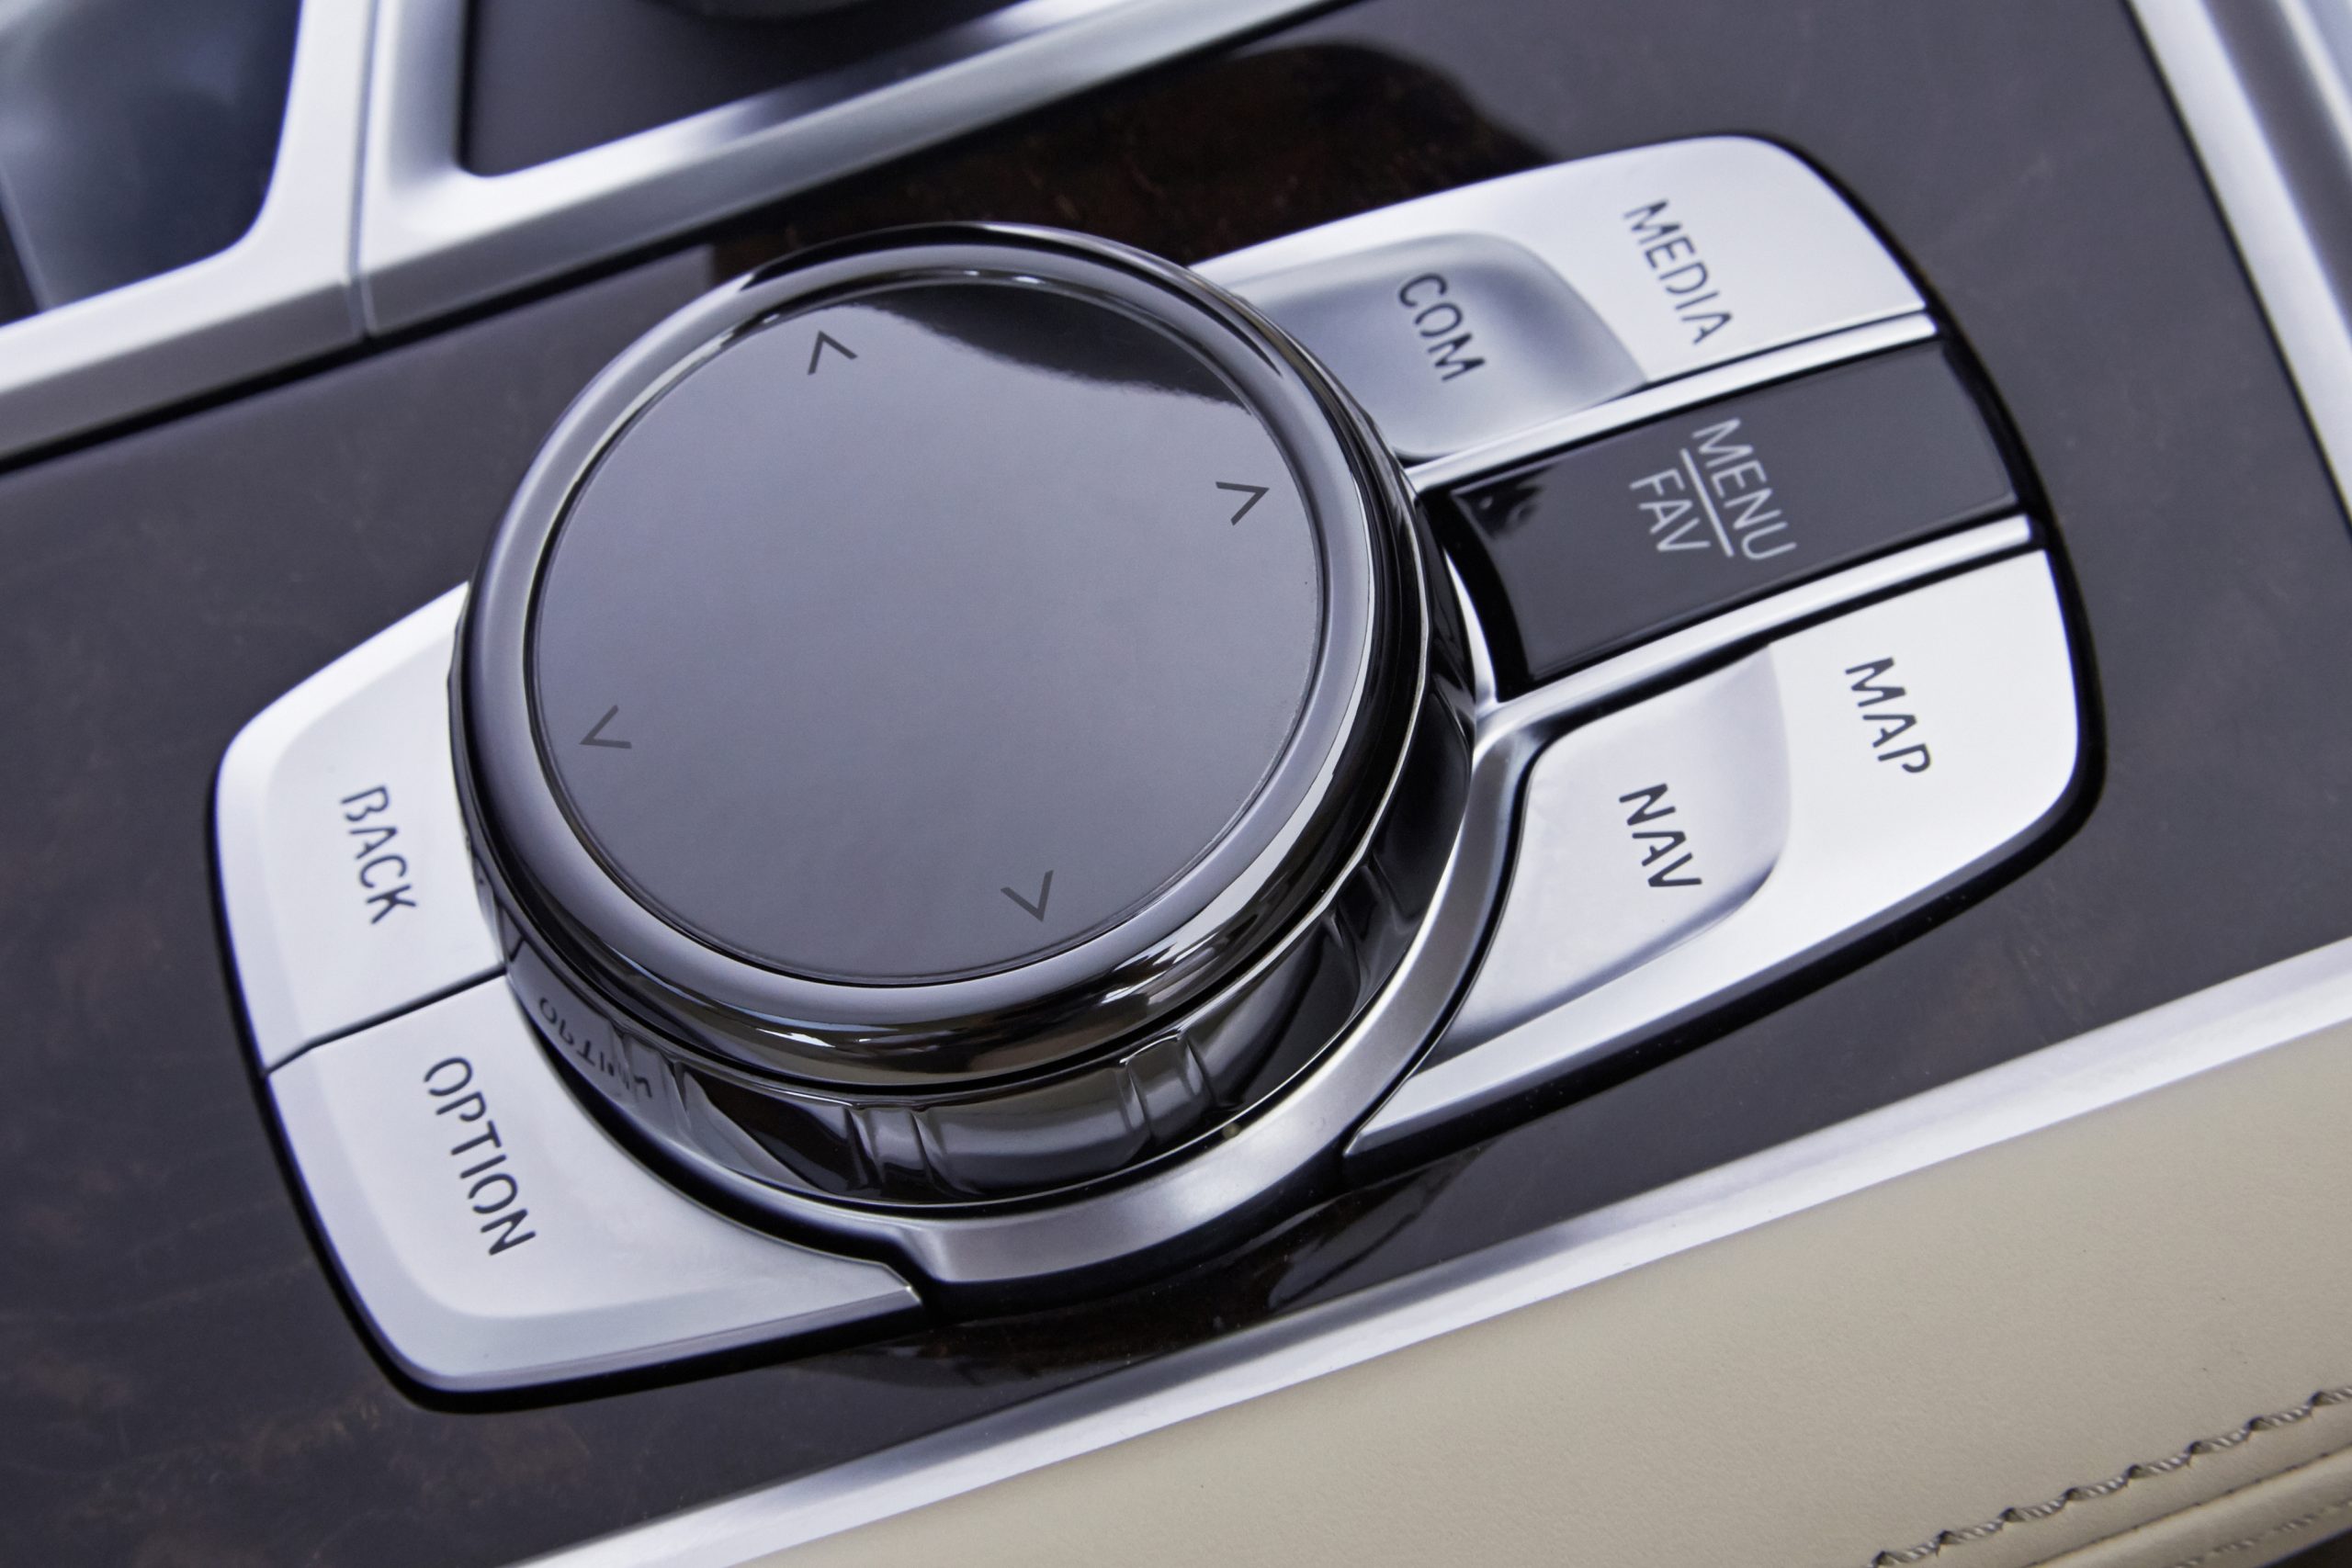 ■煩雑なスイッチ類を極力減らし、直観的に操作できることを狙った統合コントロール。BMWのiドライブはダイヤル式のコントローラーとプッシュボタンでの簡単操作が特徴。写真は2010年代のもの